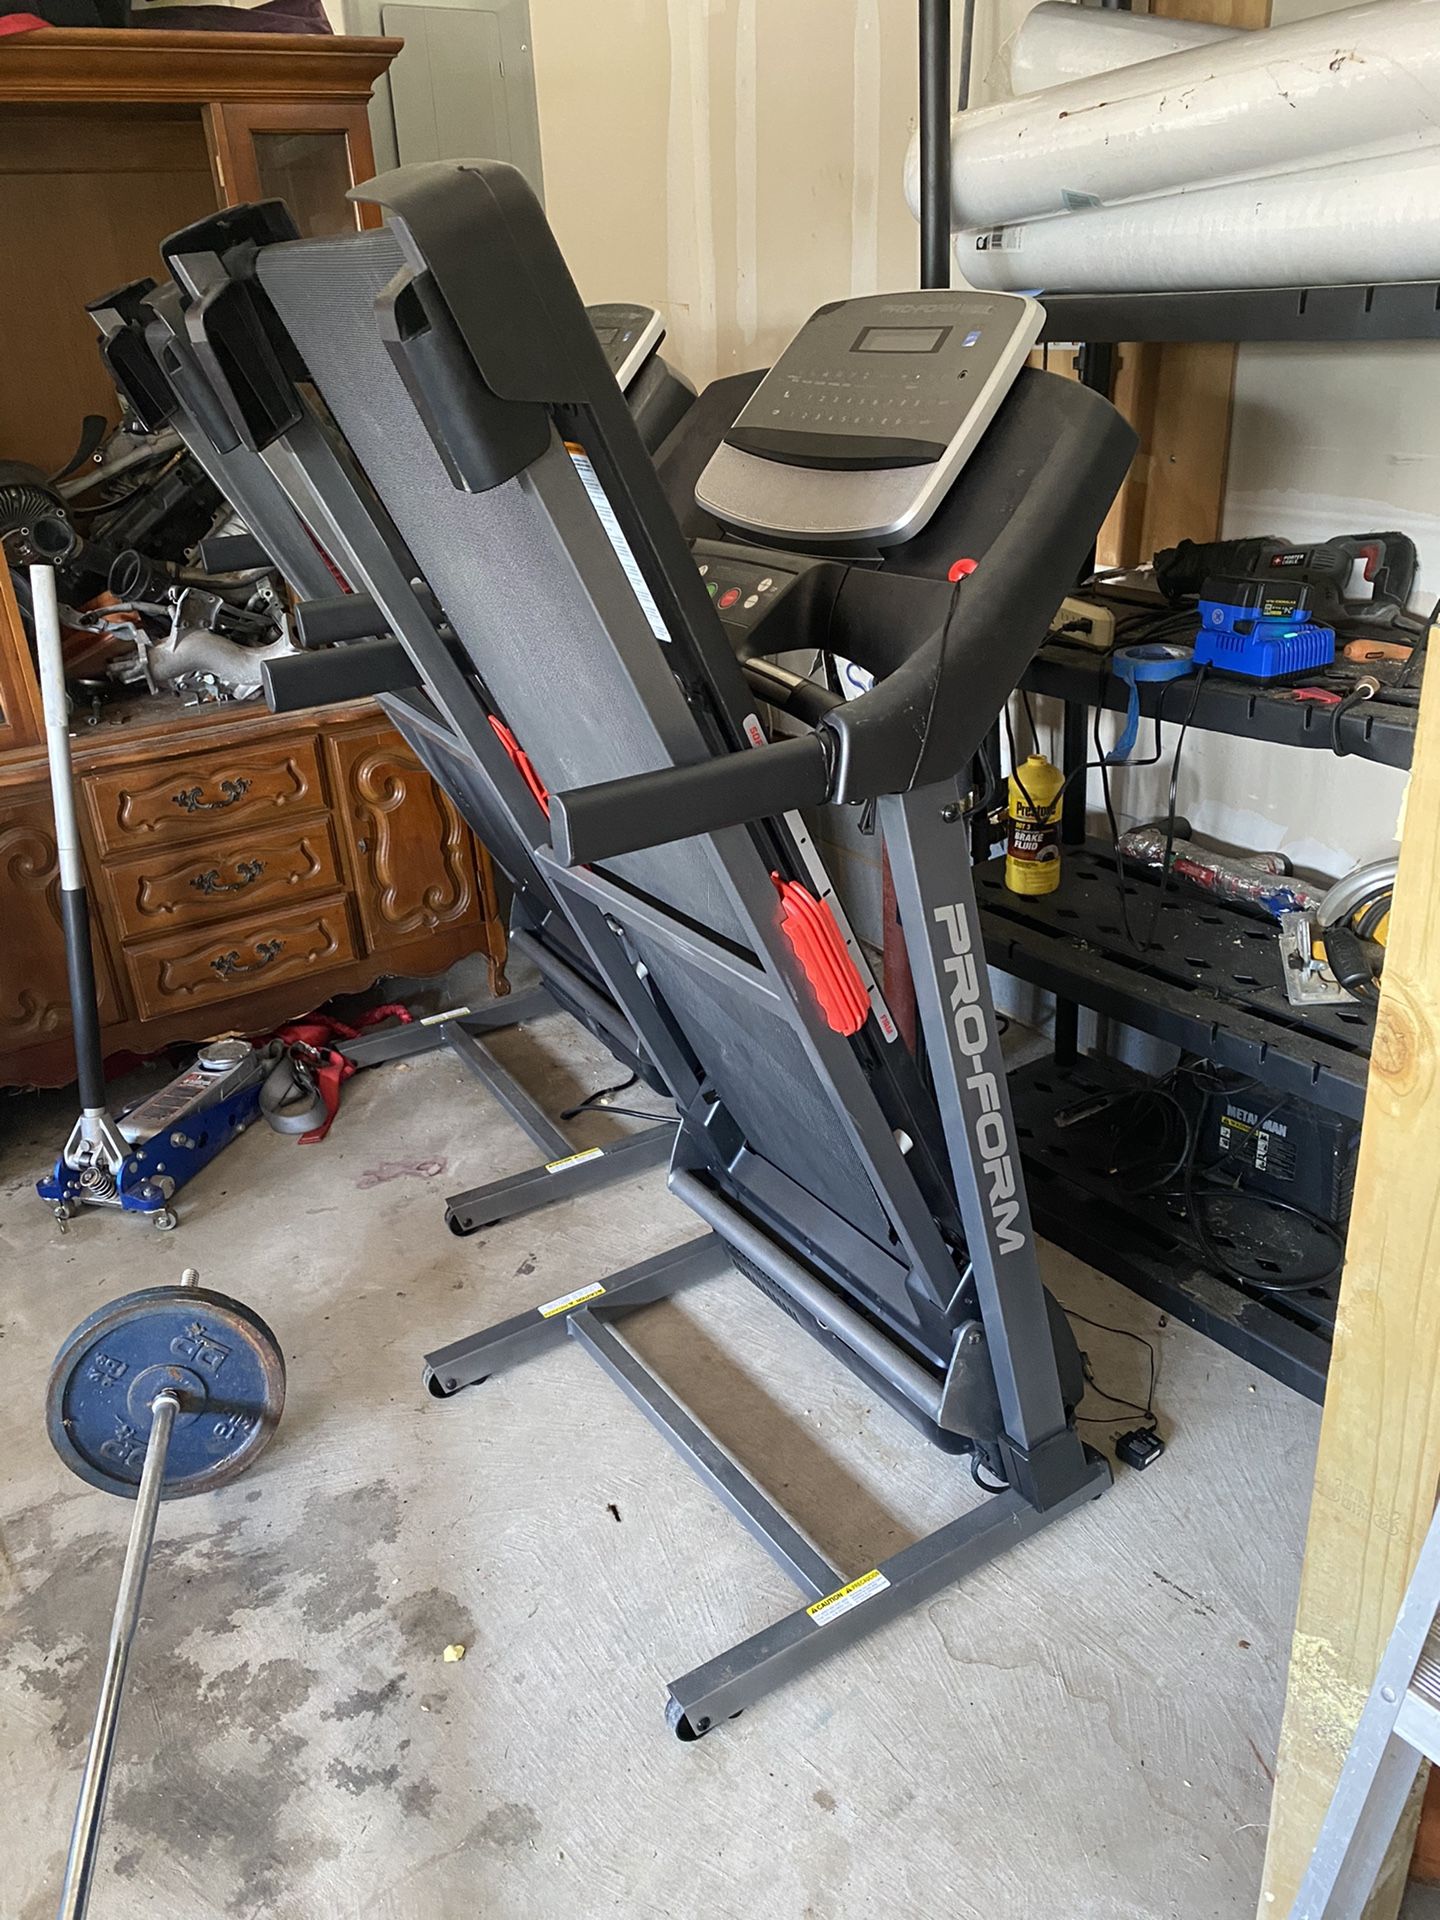 Pro-form treadmill